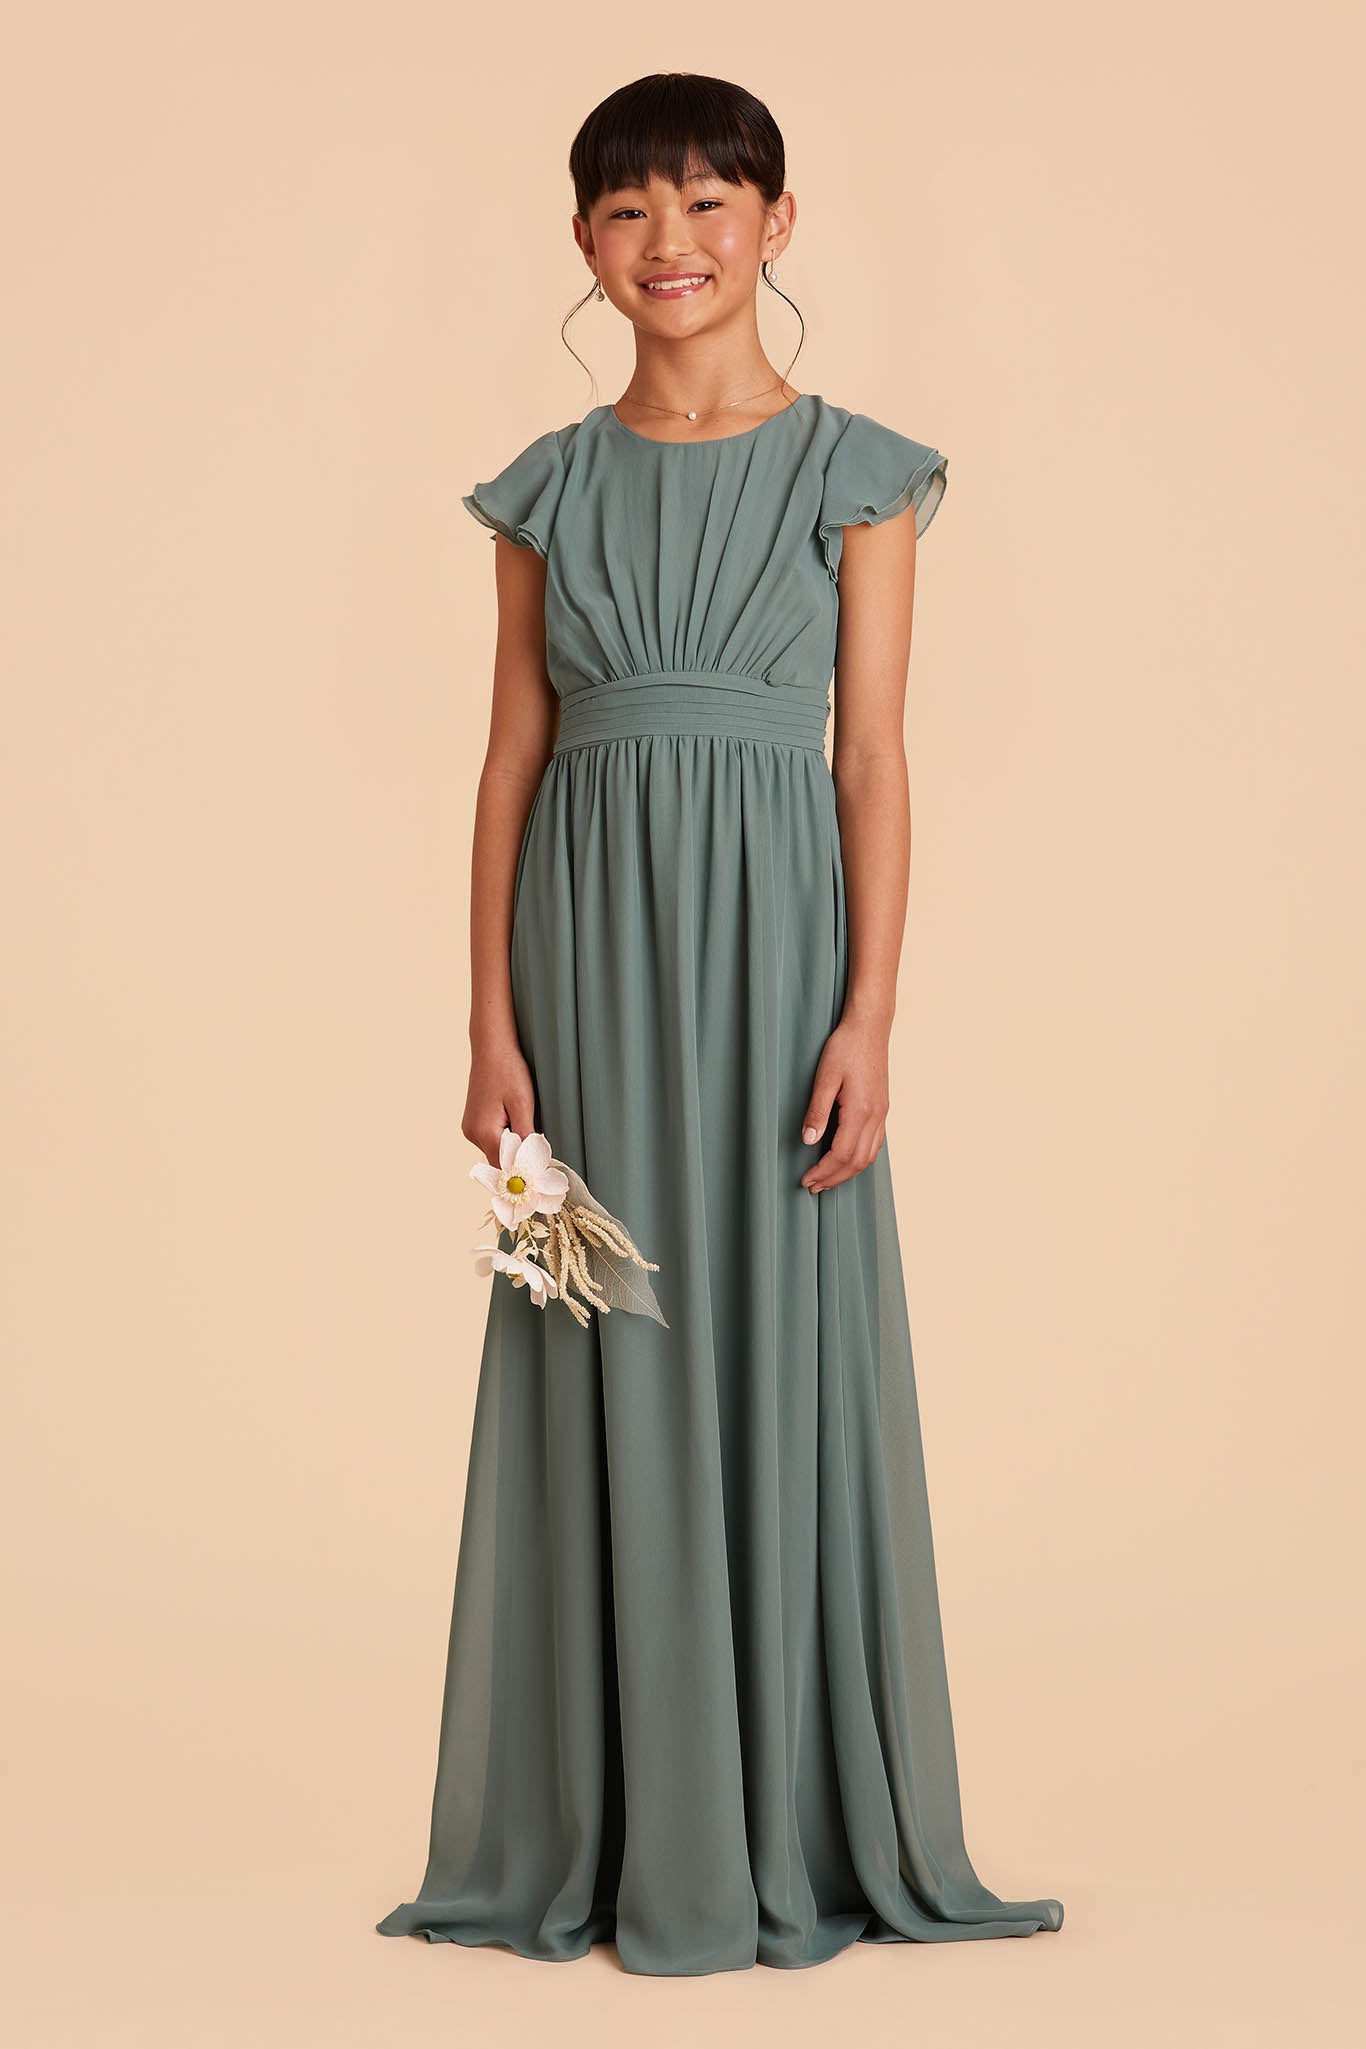 sea glass medium green frilly-sleeved floor length junior bridesmaid dress 